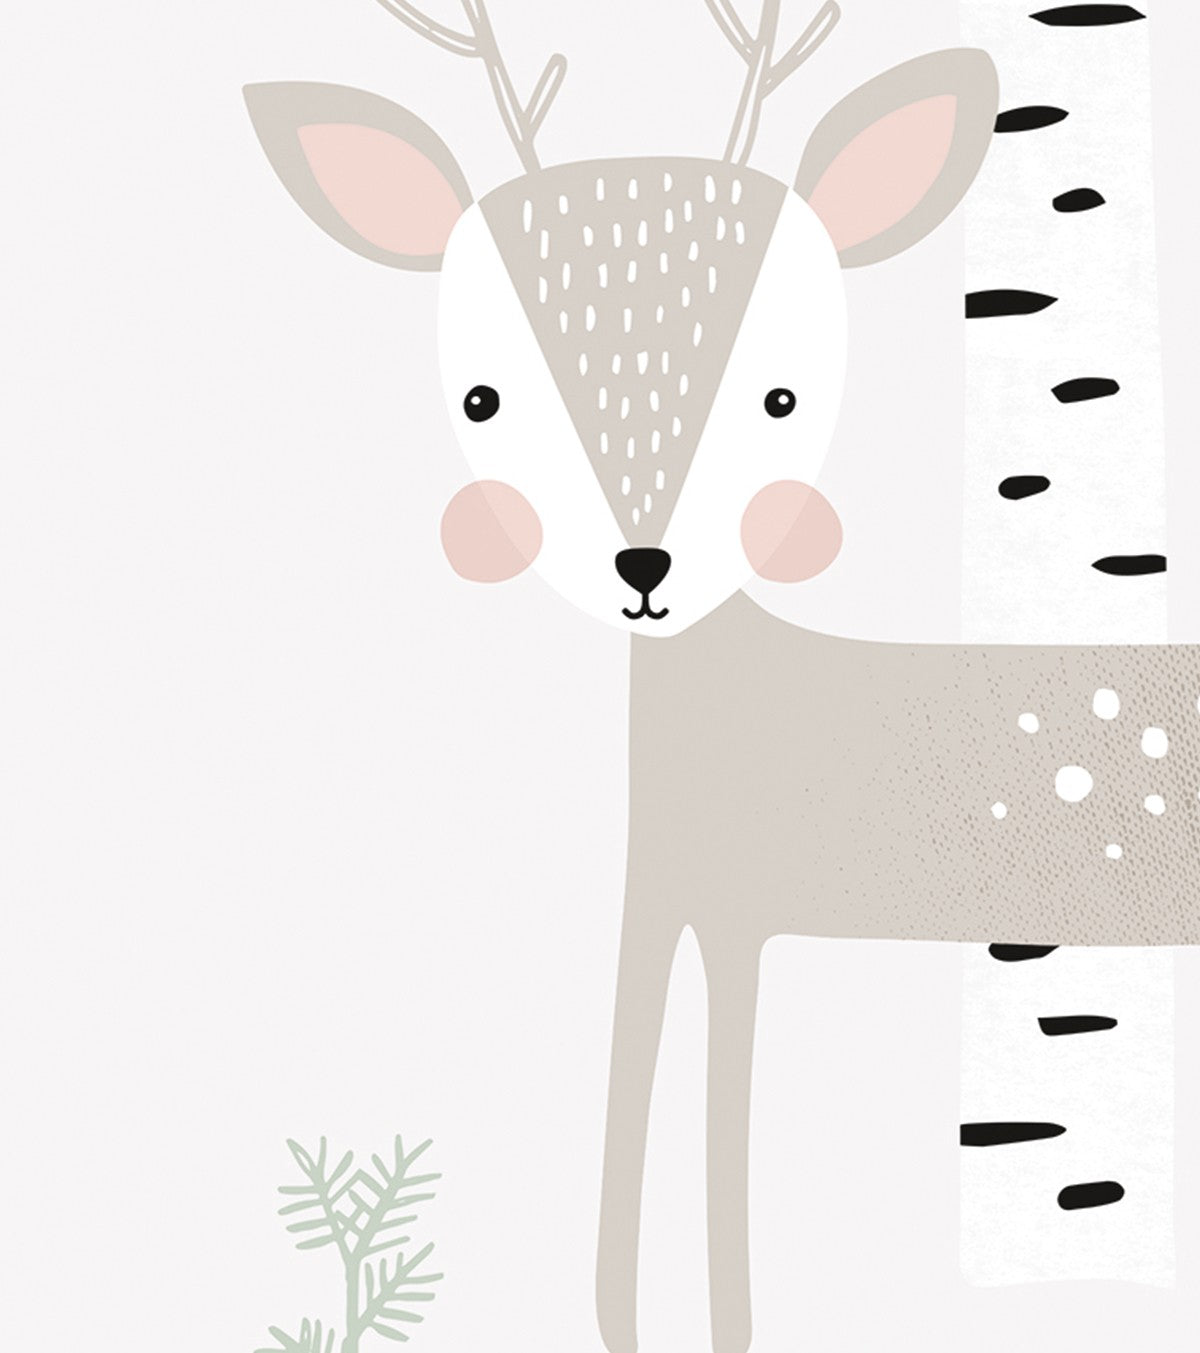 IN THE WOODS - Children's poster - The deer